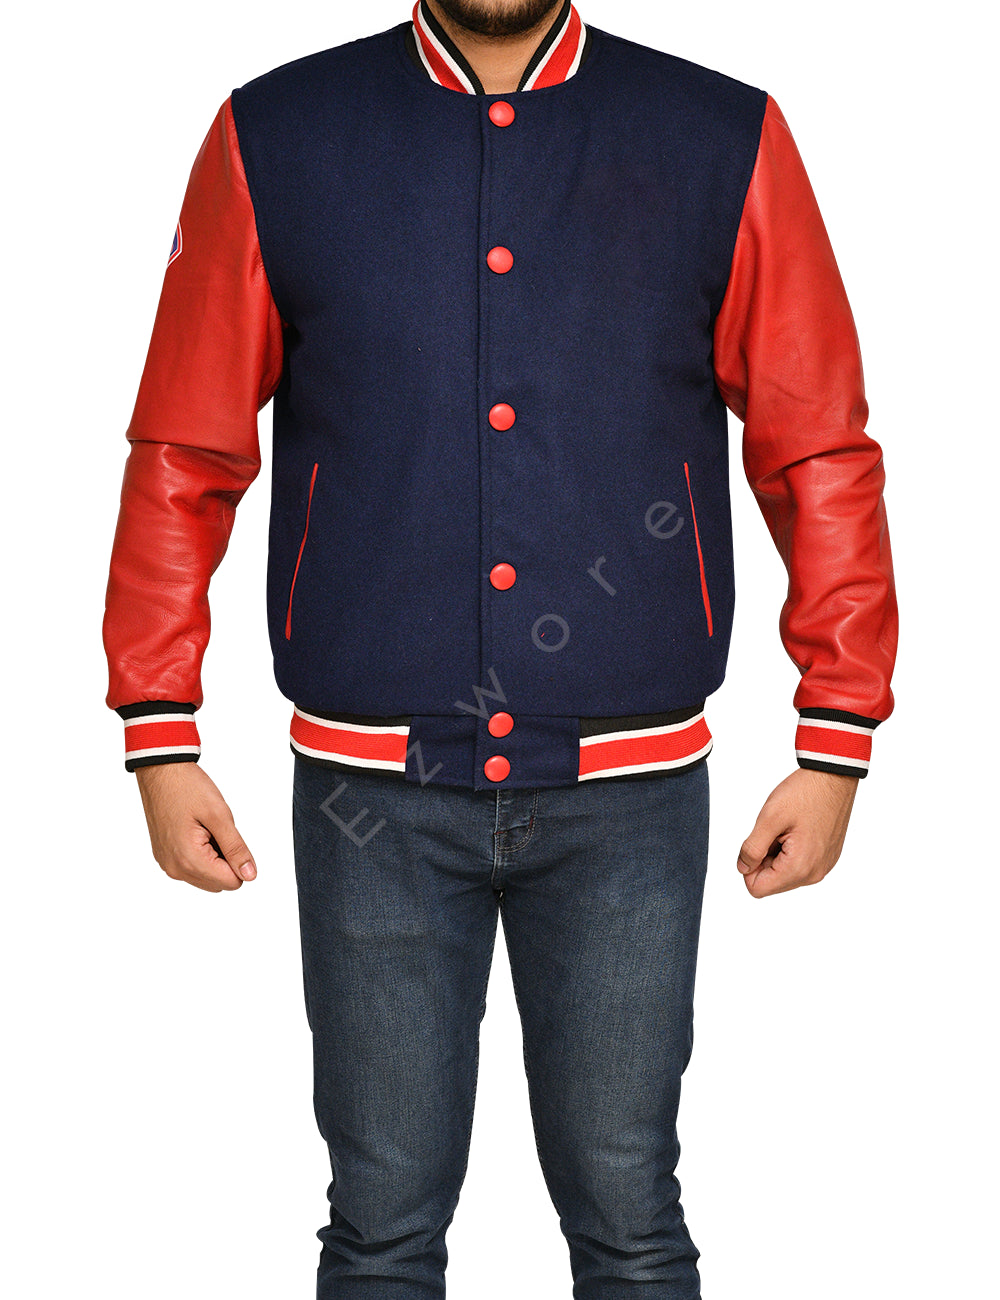 Mens Baseball Red and Blue Varsity Jacket